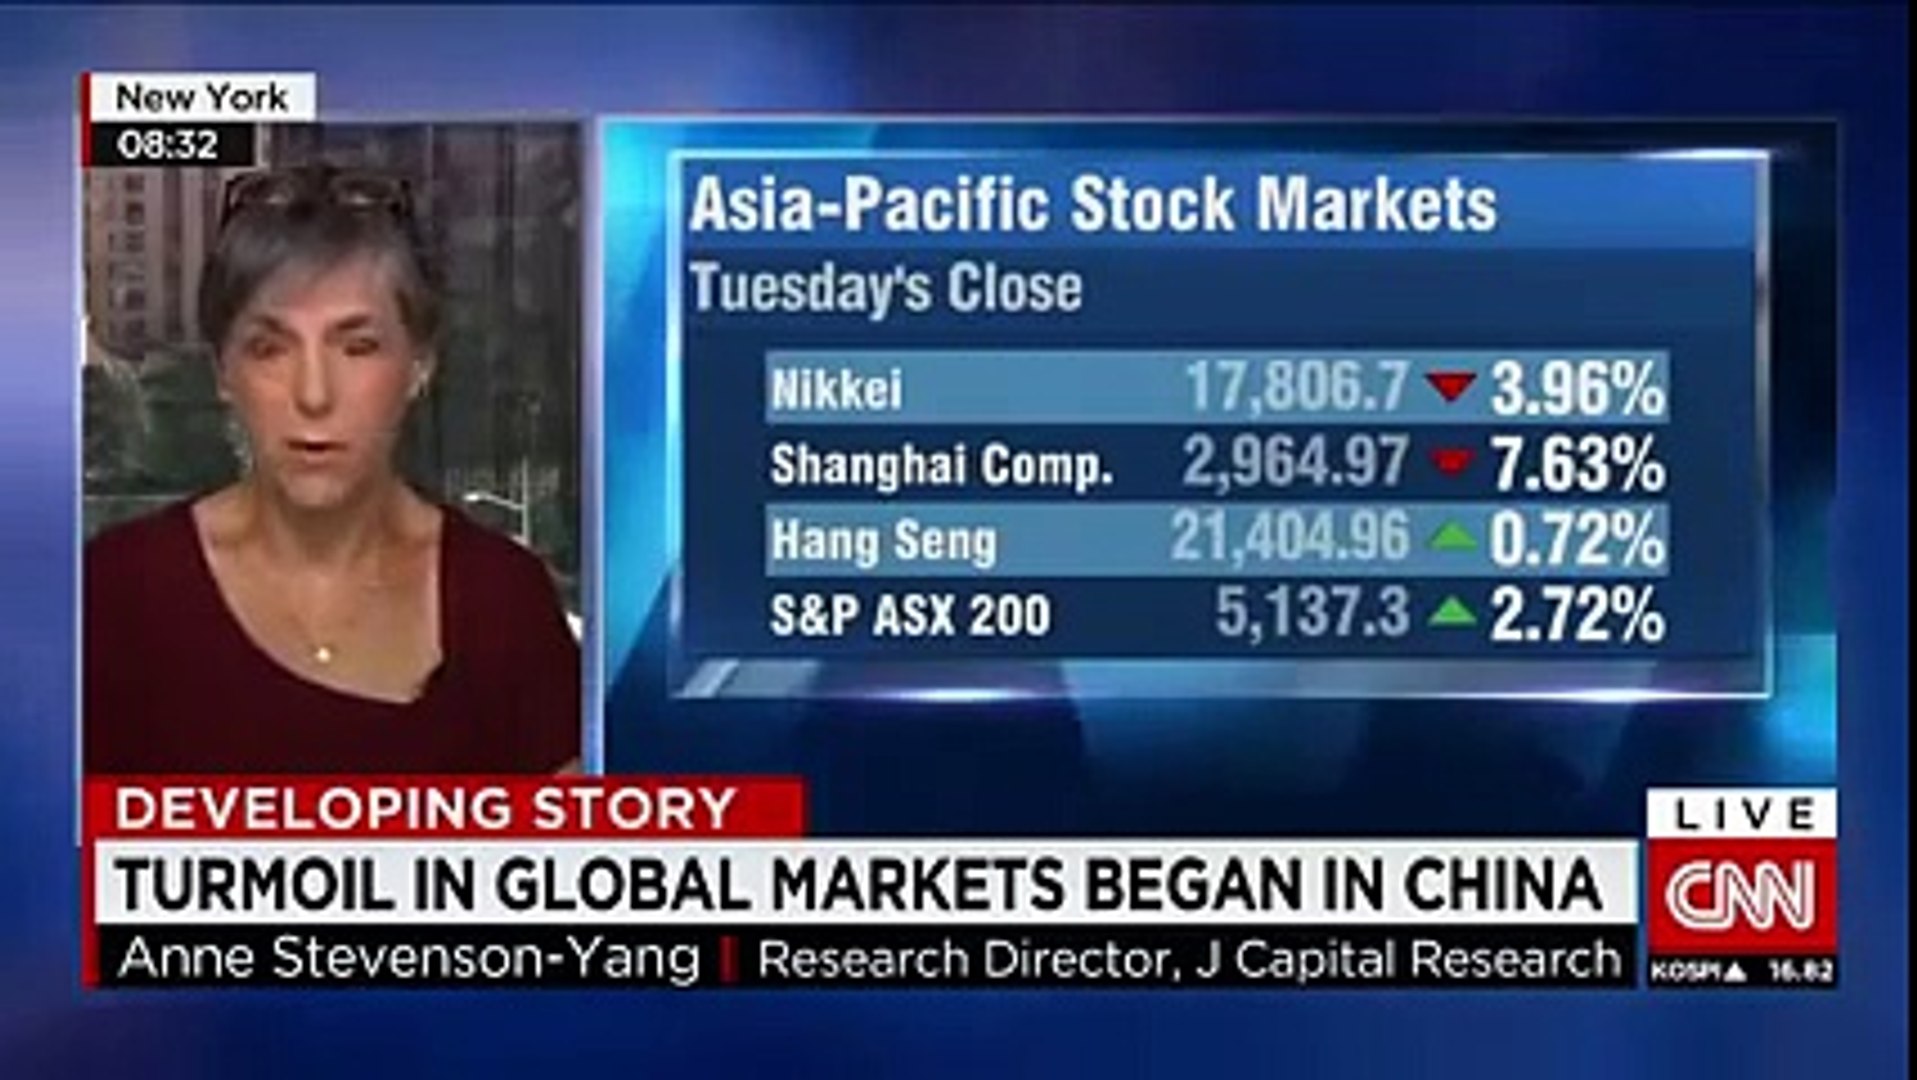 CNN News August 26 2015 Understanding China's stock market ...